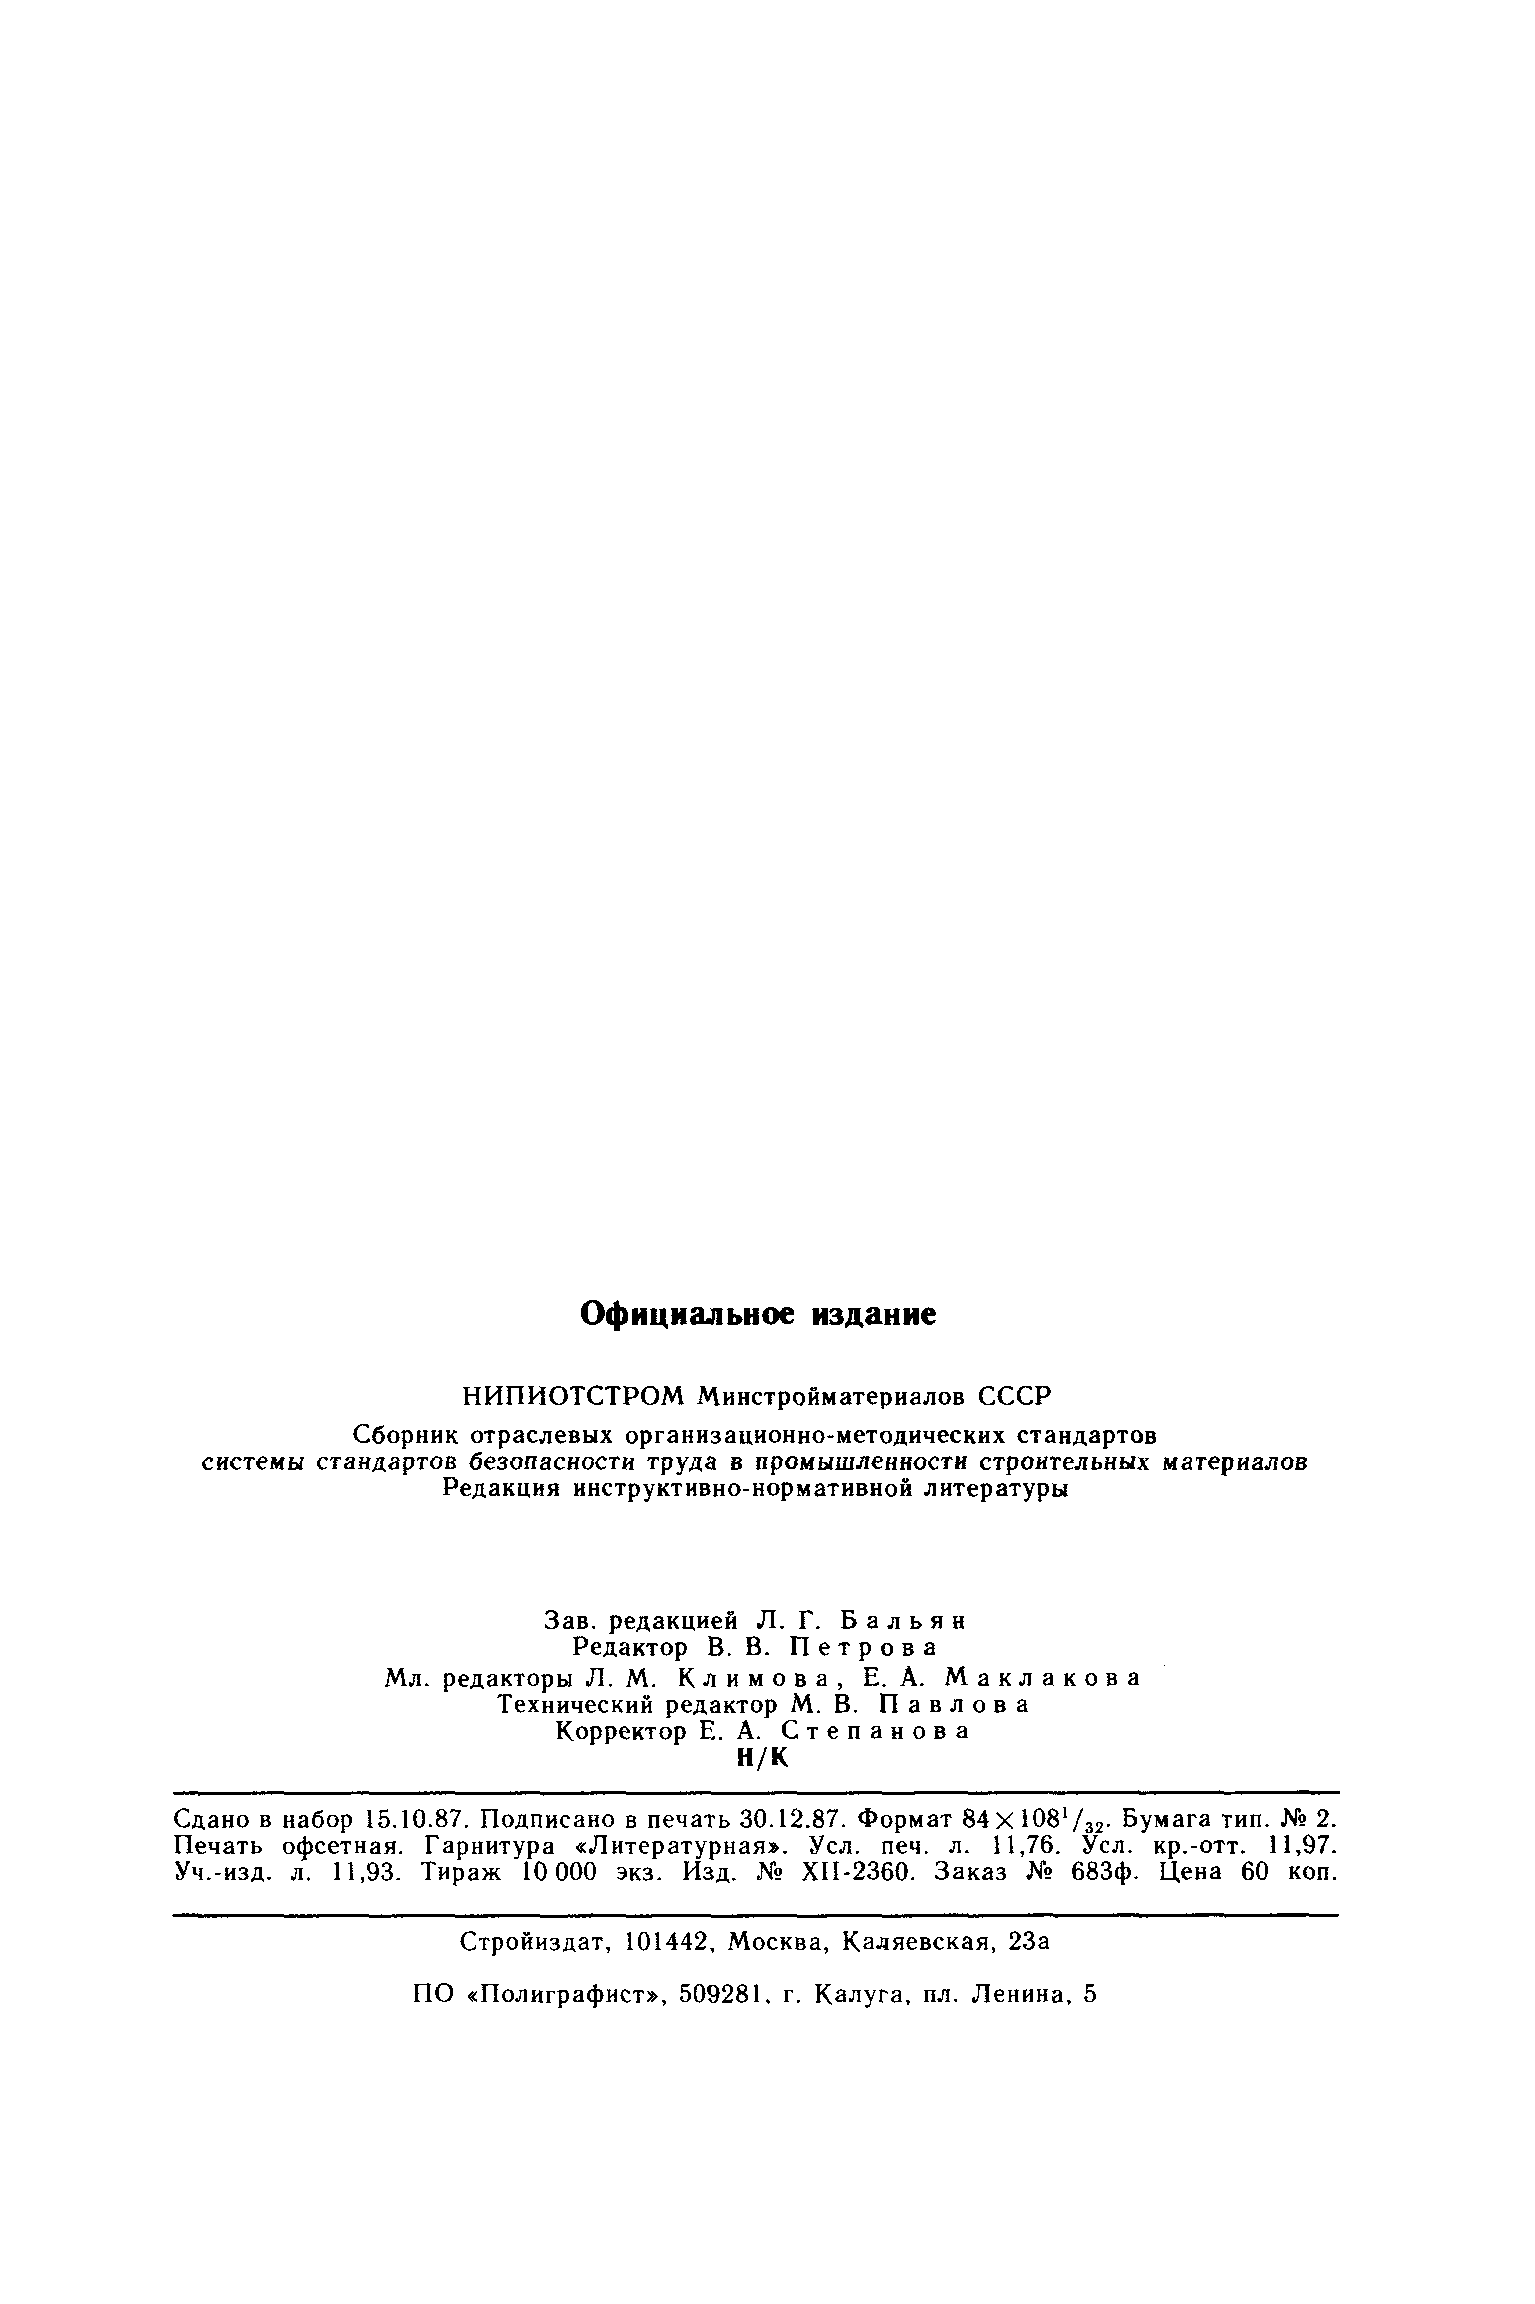 ОСТ 21.112.0.003-82